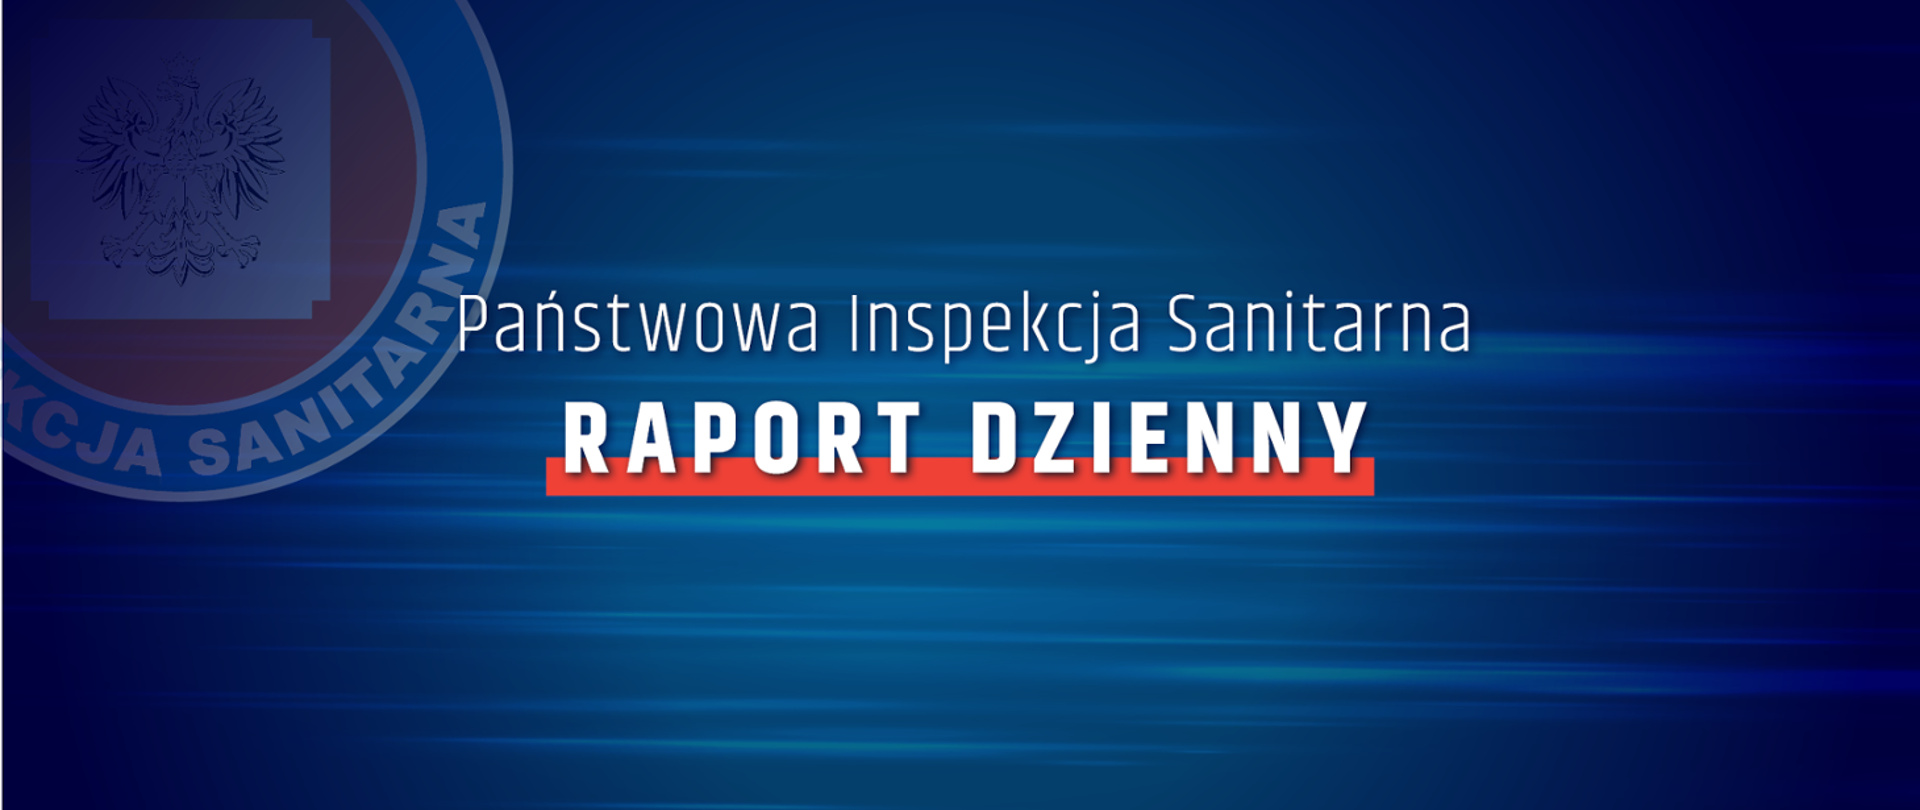 Państwowa Inspekcja Sanitarna - Raport Dzienny